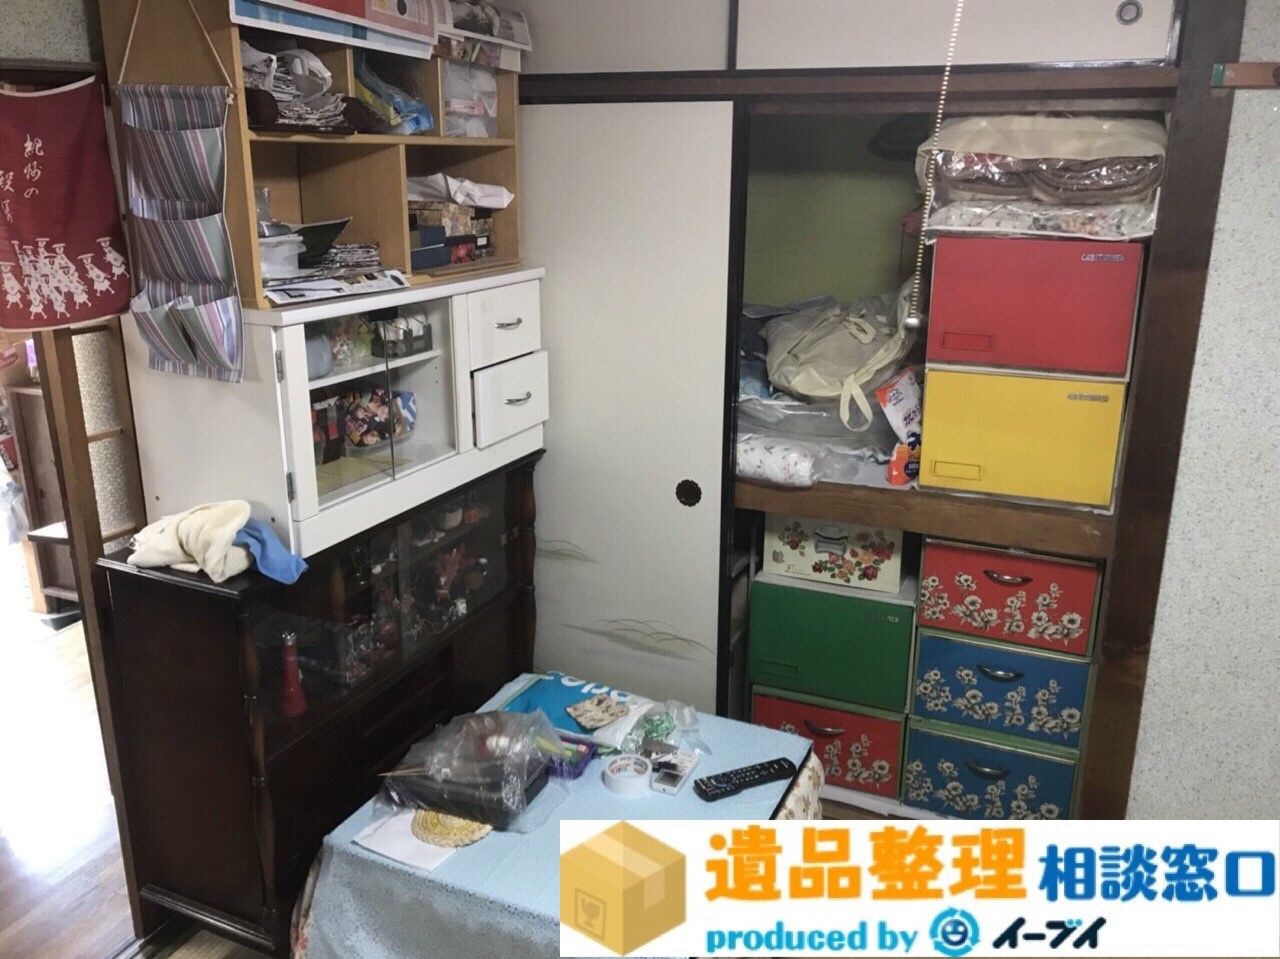 大阪府泉南市で遺品整理に伴い家具処分をしました。のアイキャッチ